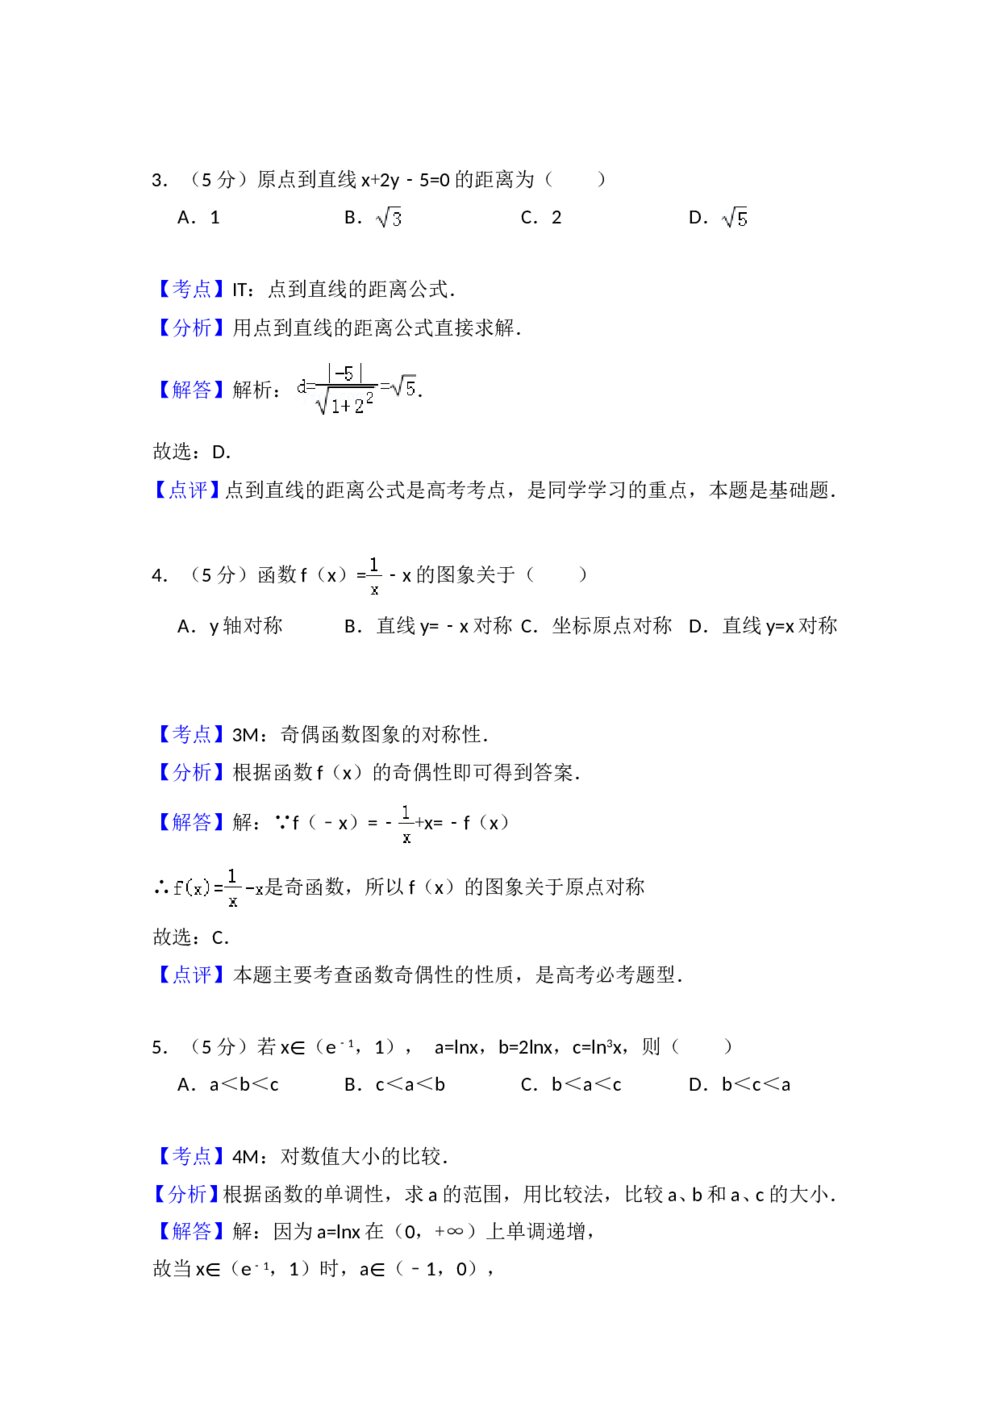 2008年全国统一高考数学试卷(文科)(全国卷ⅱ)+(答案解析)6